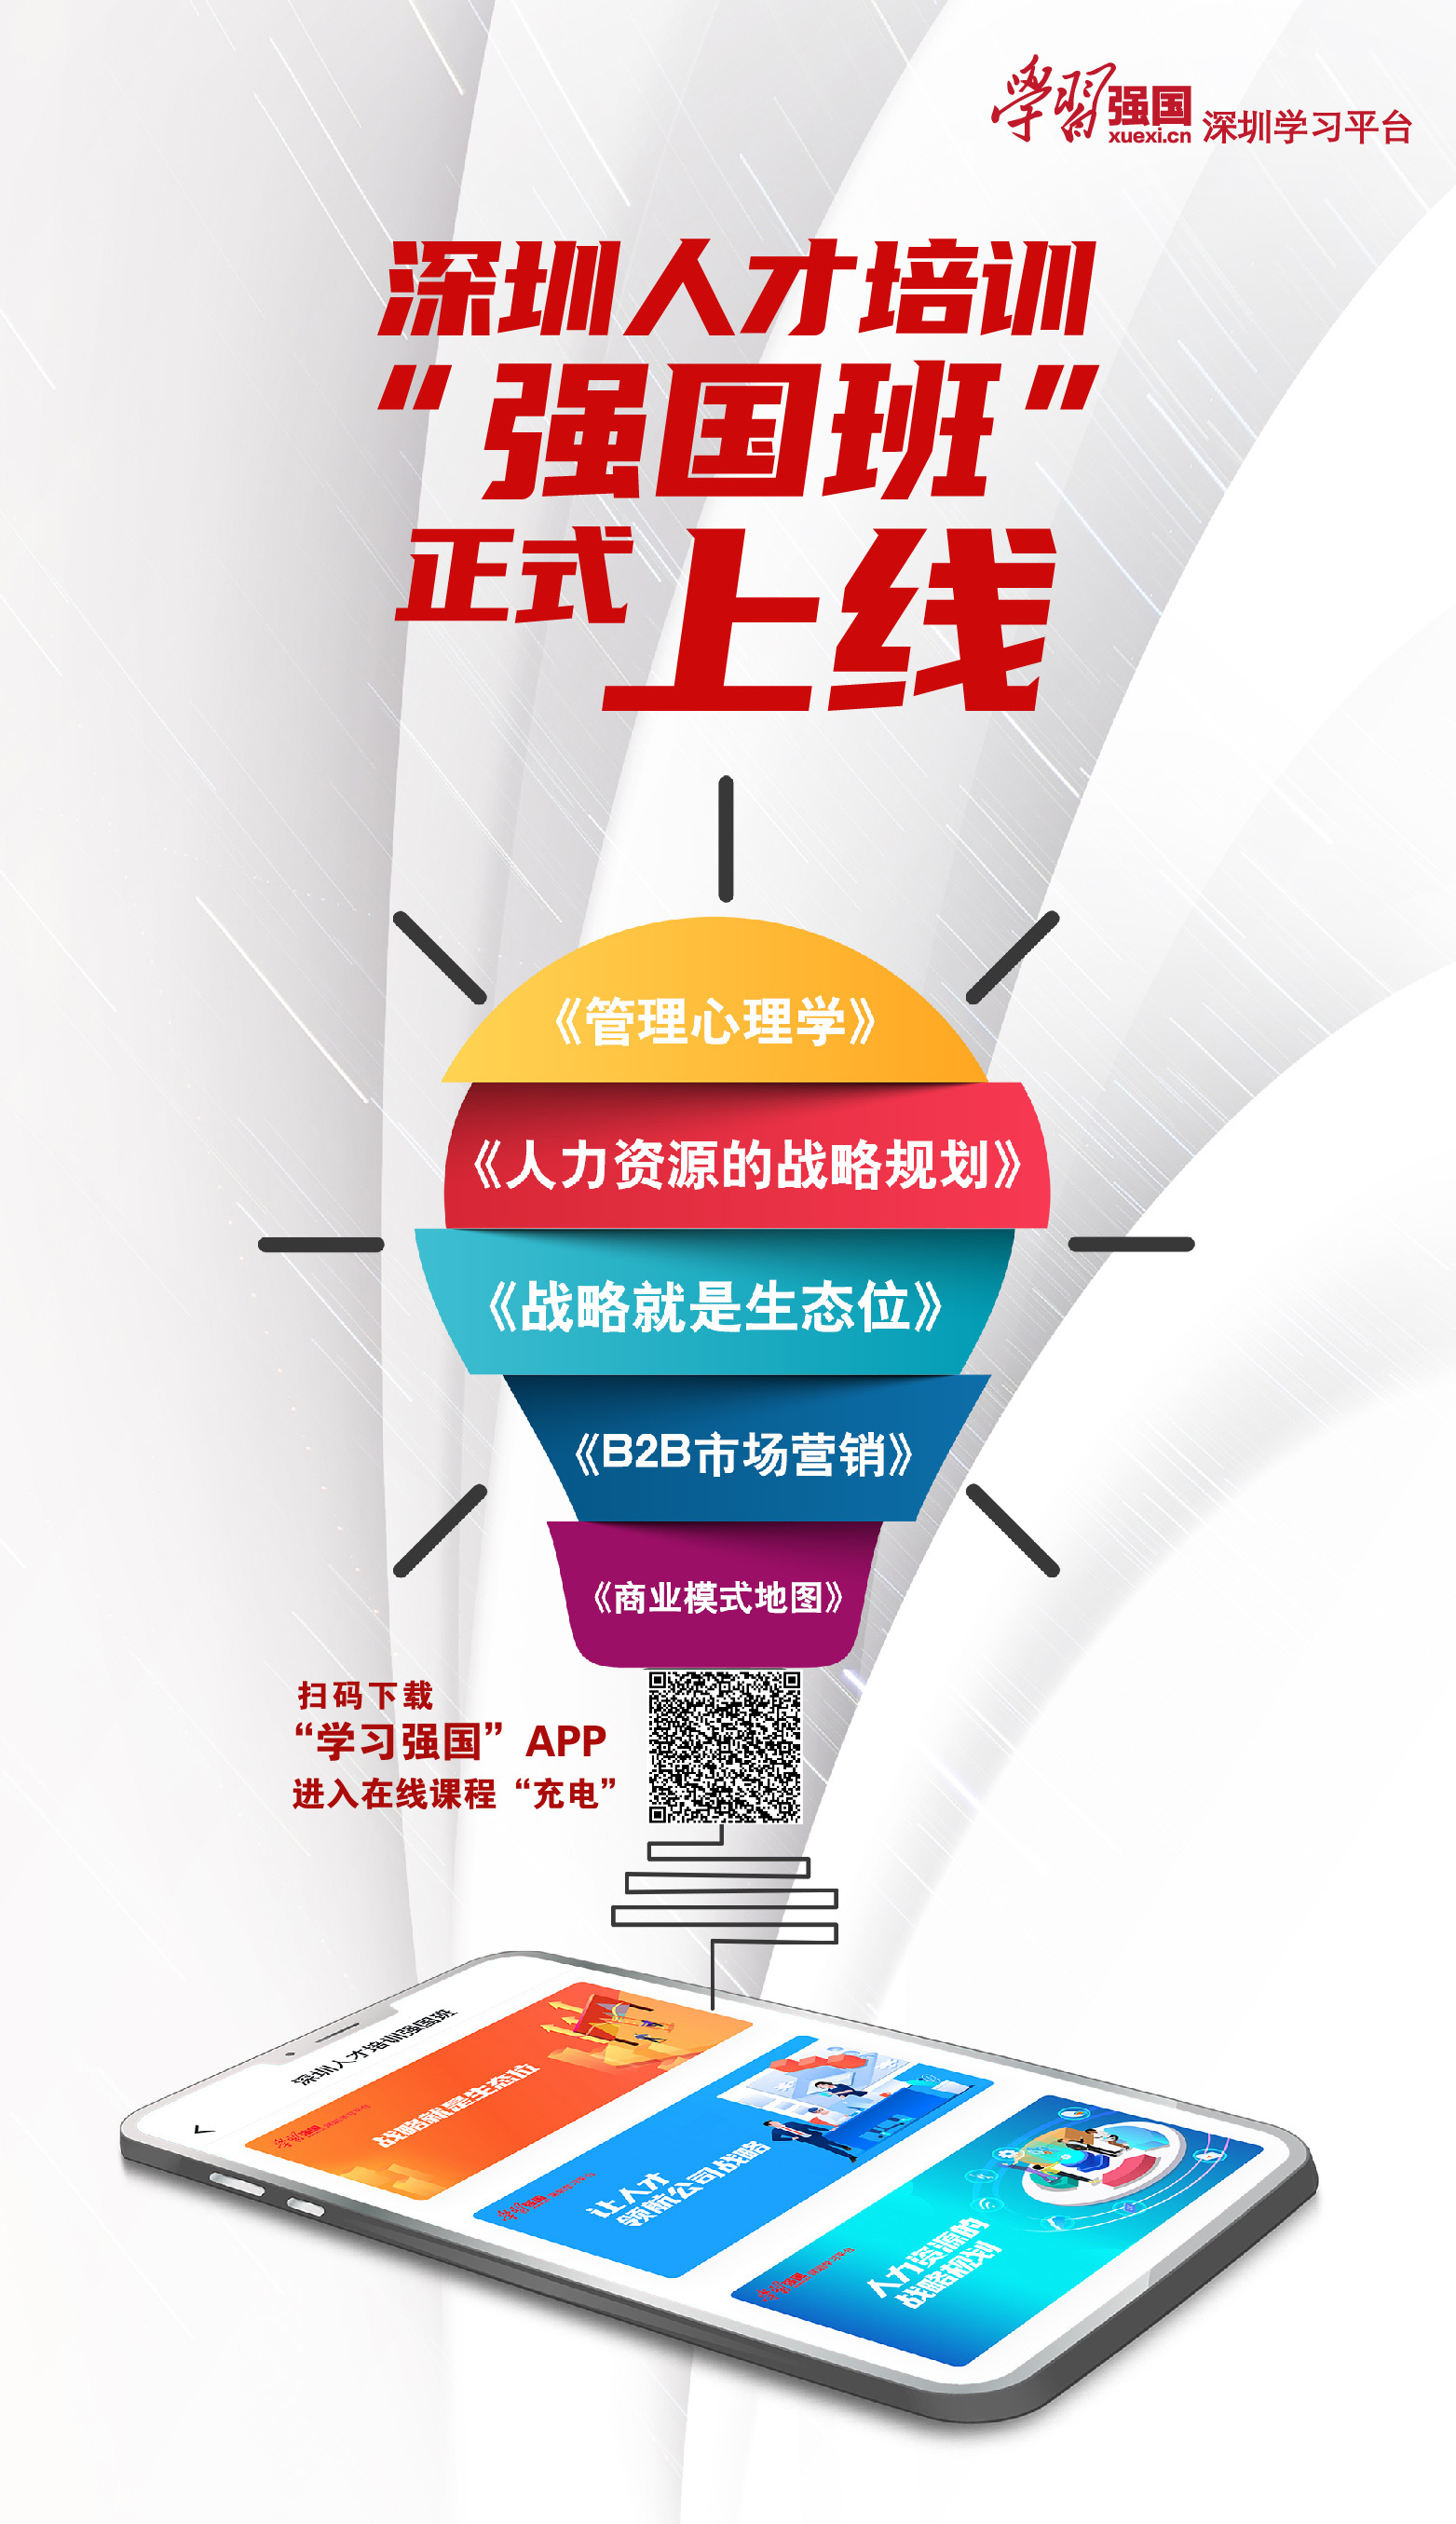 深圳人才培训“强国班”正式启动 为中小企业“充电”赋能